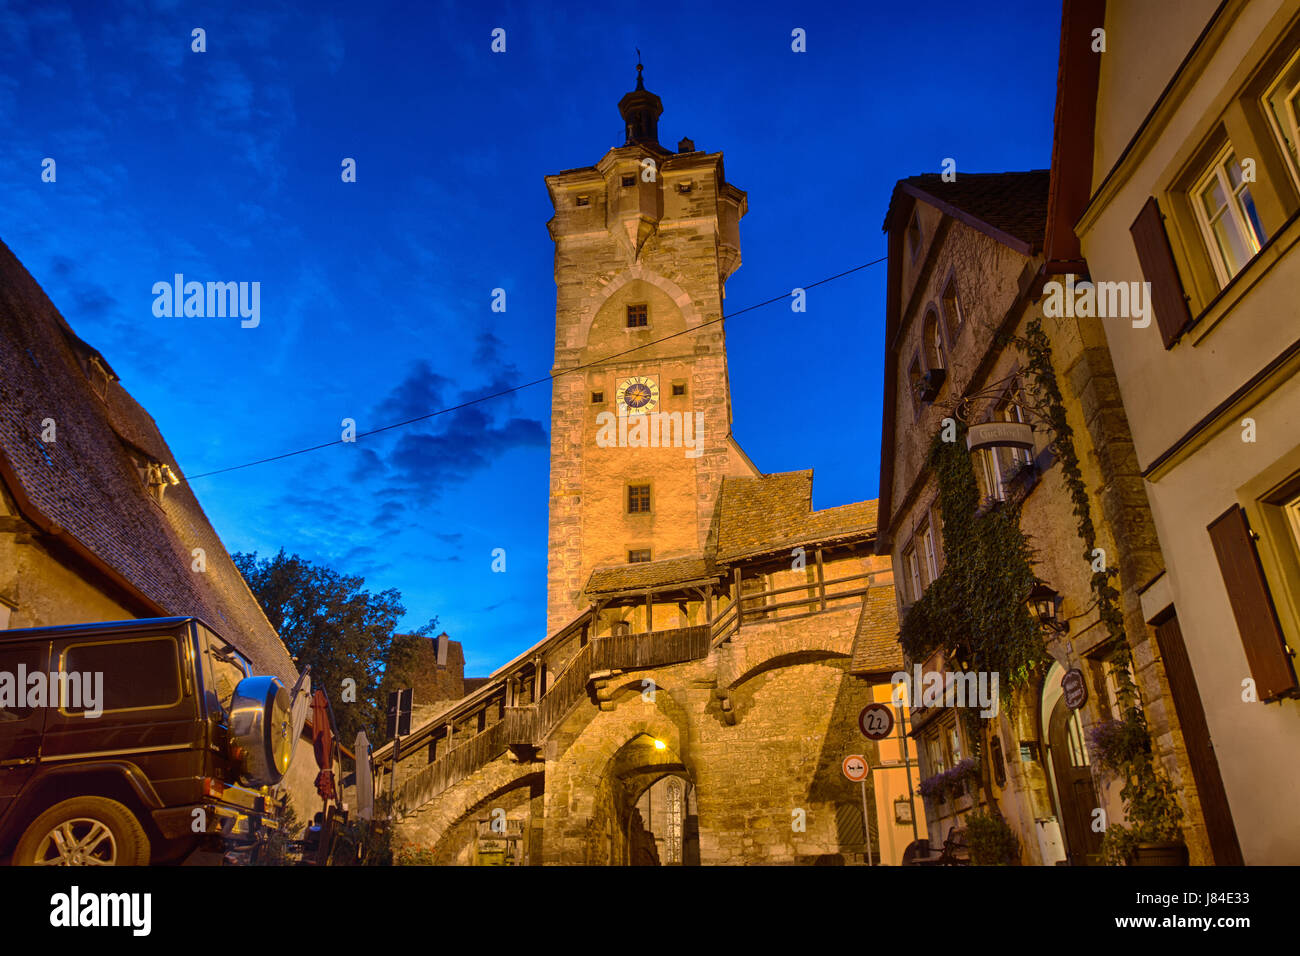 Bild von einem Gebäude in der alten Stadt von Rothenburg Ob der Tauber, Bavaria, Germany Stockfoto